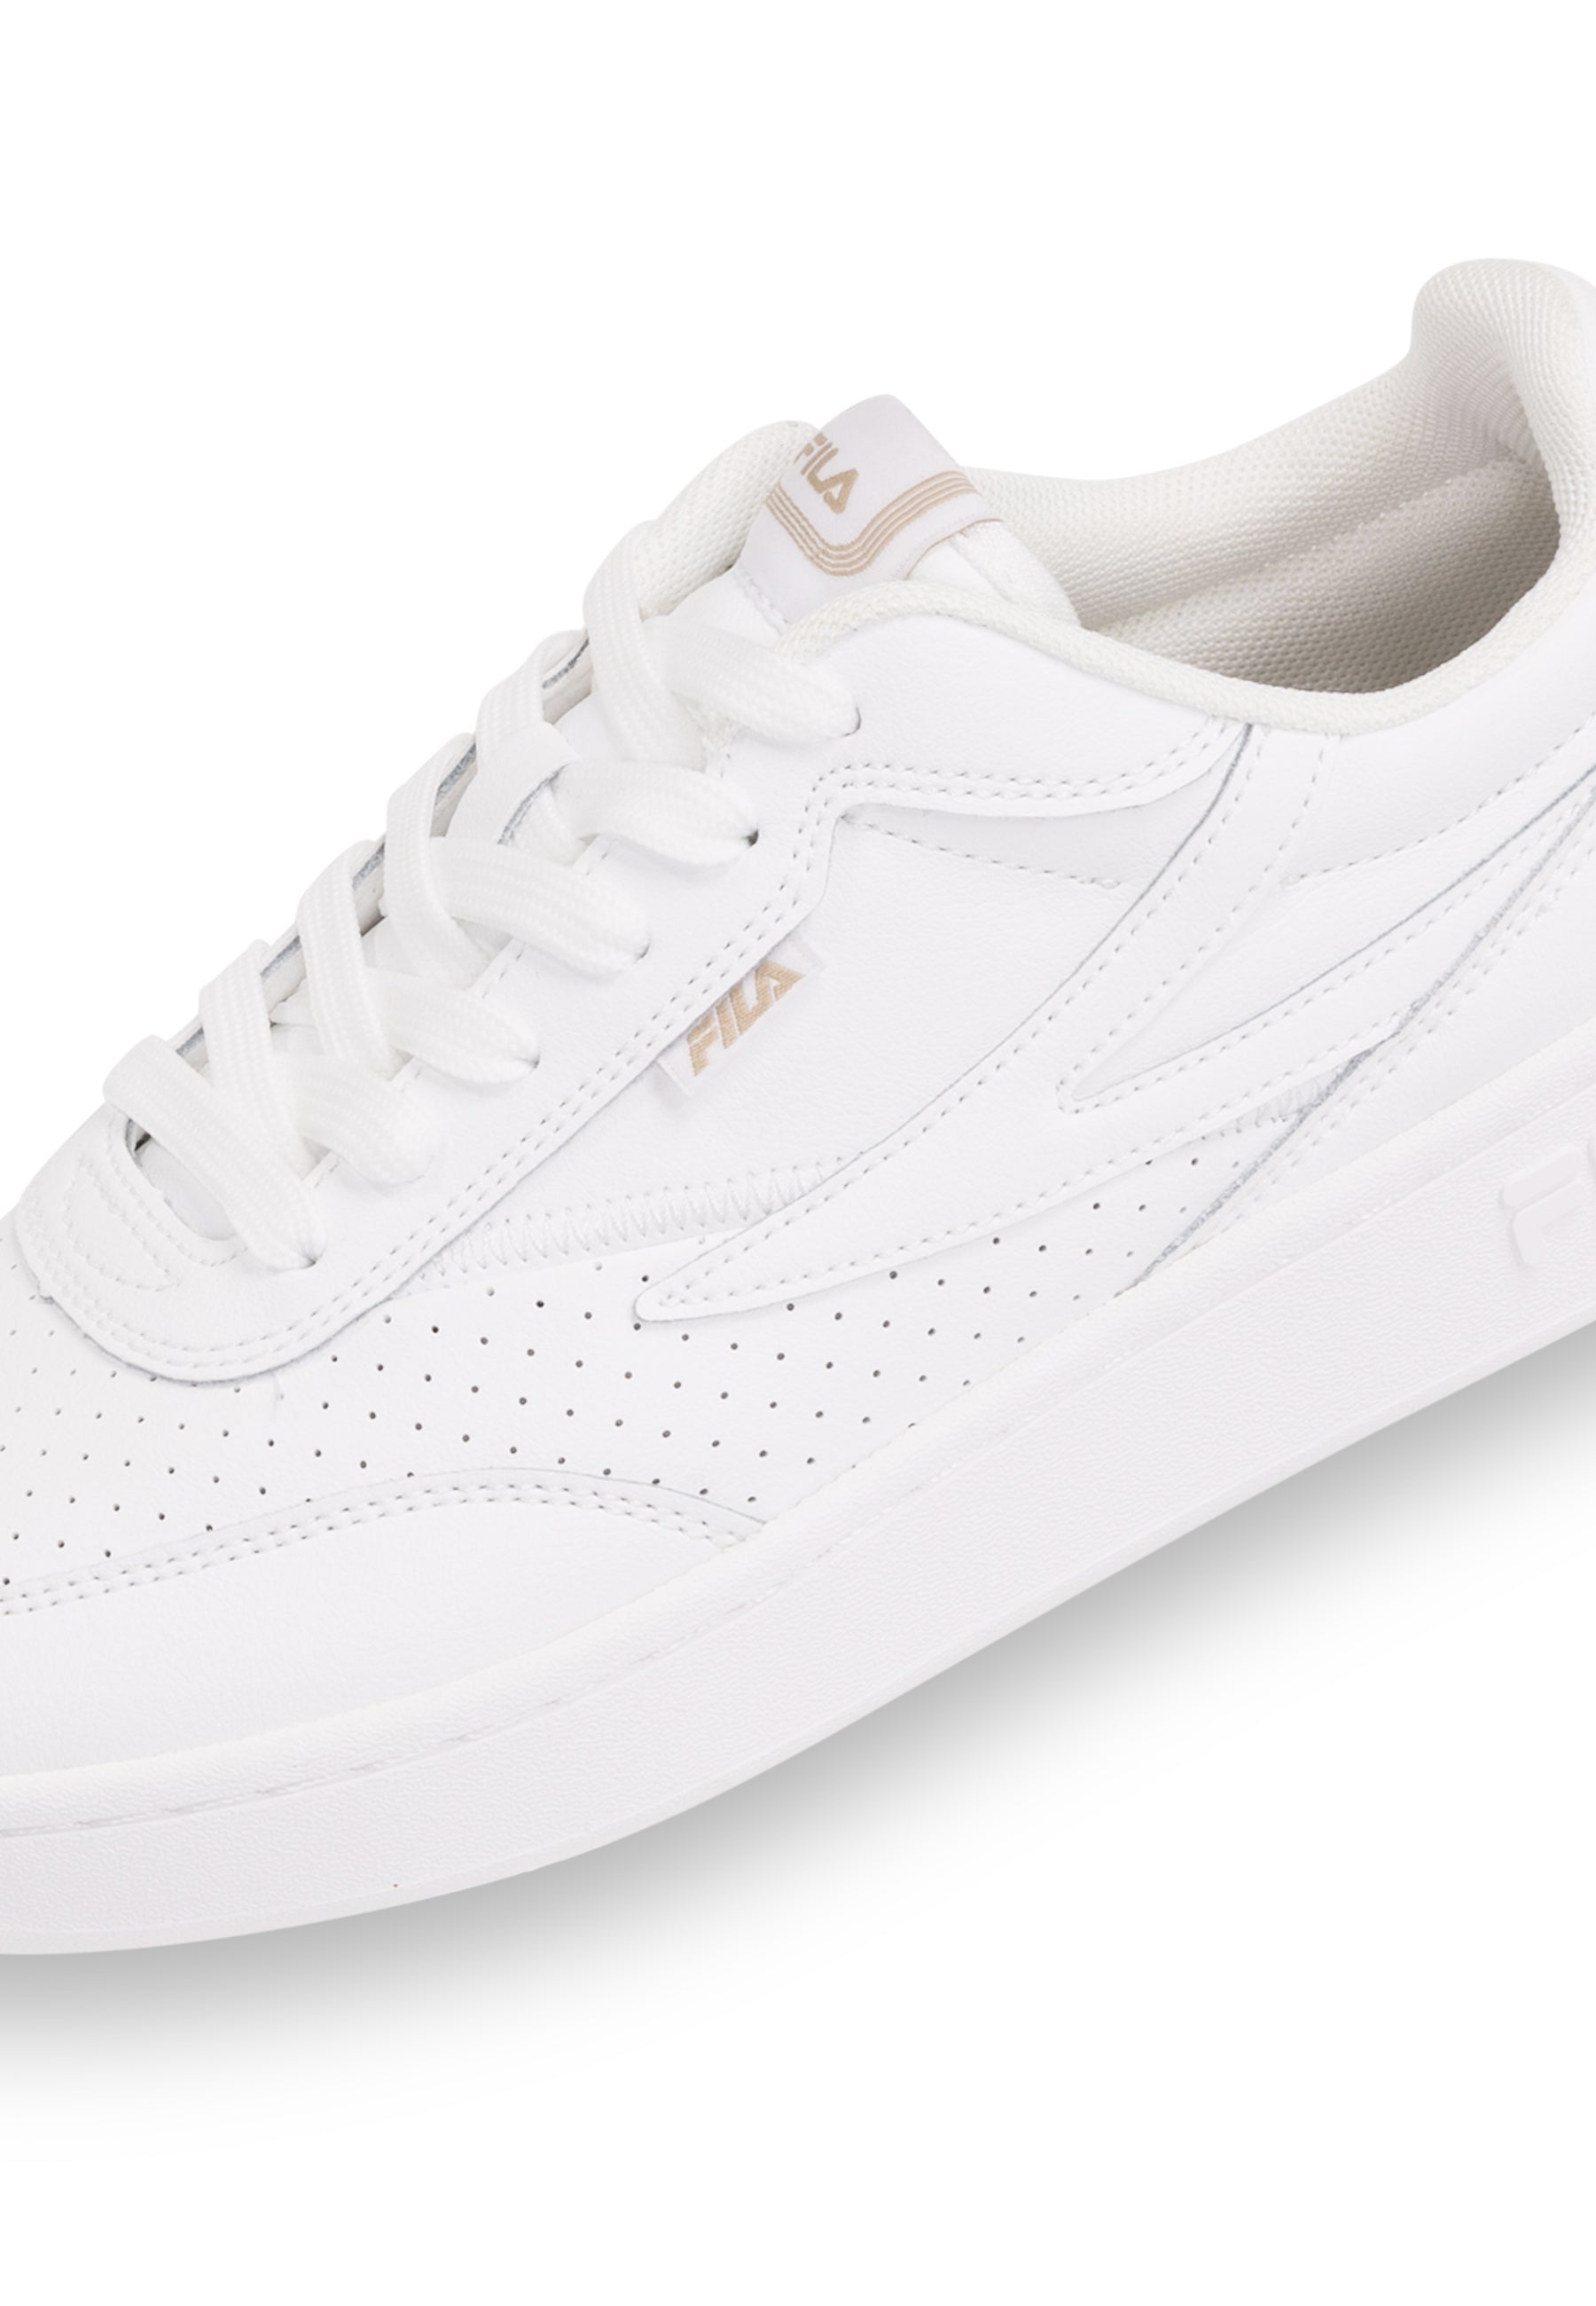 Fila Sevaro in White Sneakers Fila   